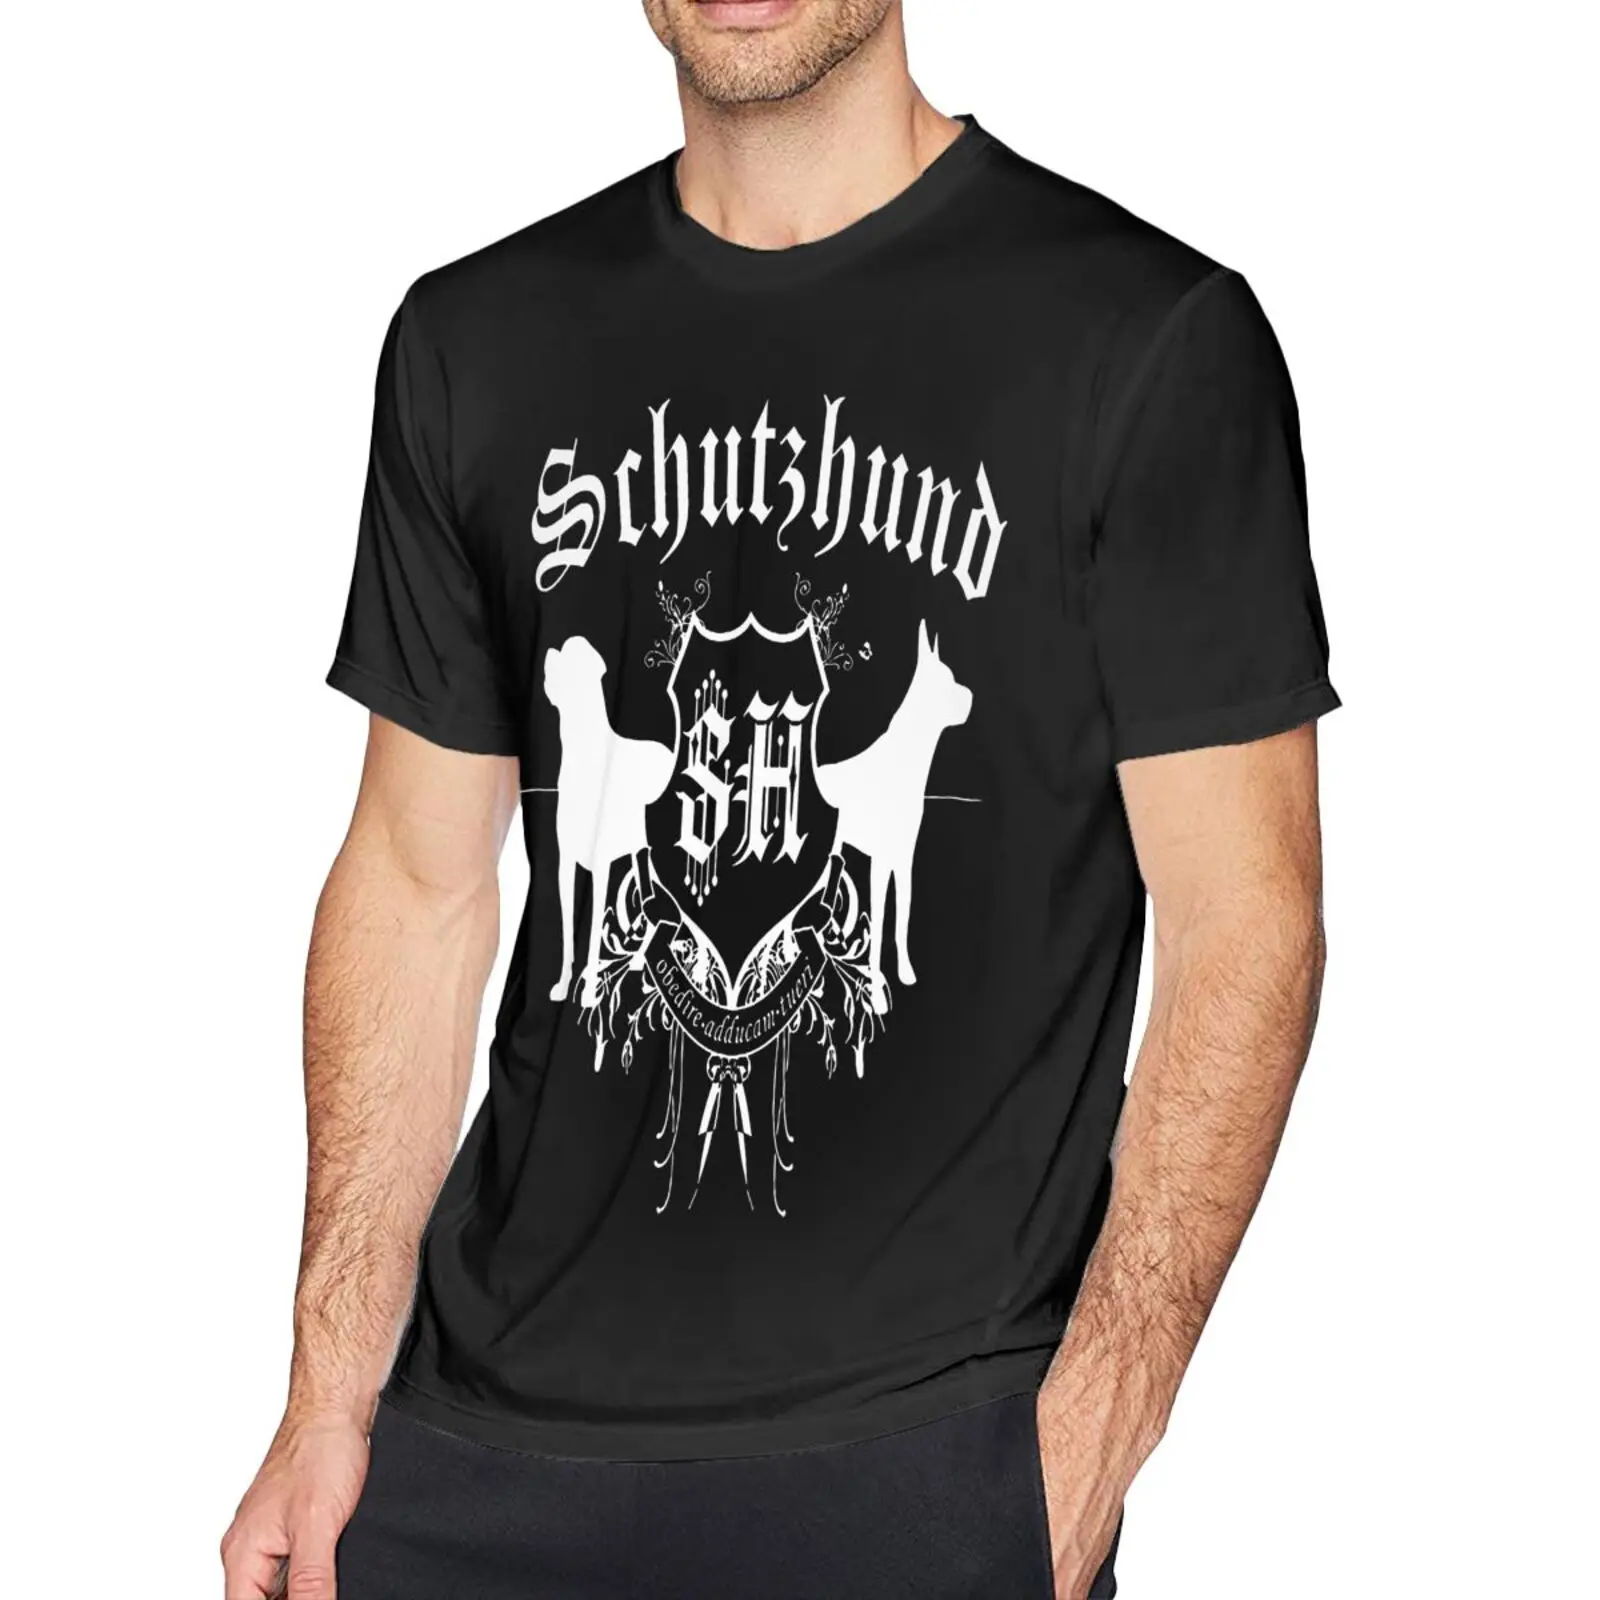 

Schutzhund собака спортивное снаряжение Gsd Мужская футболка гранж футболка Топы винтажные рубашки для мужчин футболки с коротким рукавом футбол...